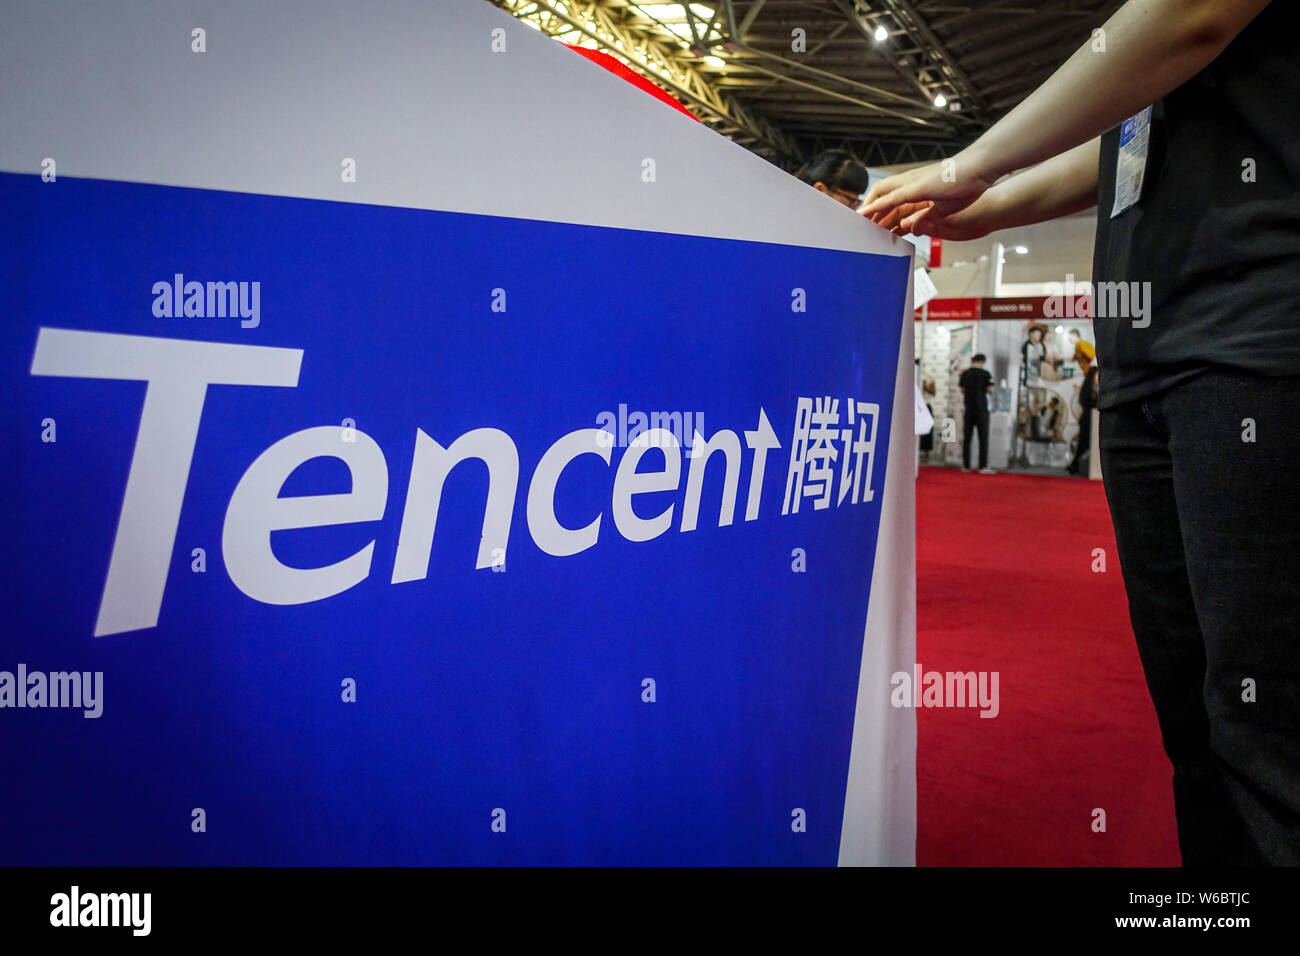 ---- Leute besuchen Sie den Stand von Tencent während der ITB China 2018 in Shanghai, China, 16. Mai 2018. Tencent Cloud Präsident Qiu Yuepeng angekündigt W Stockfoto